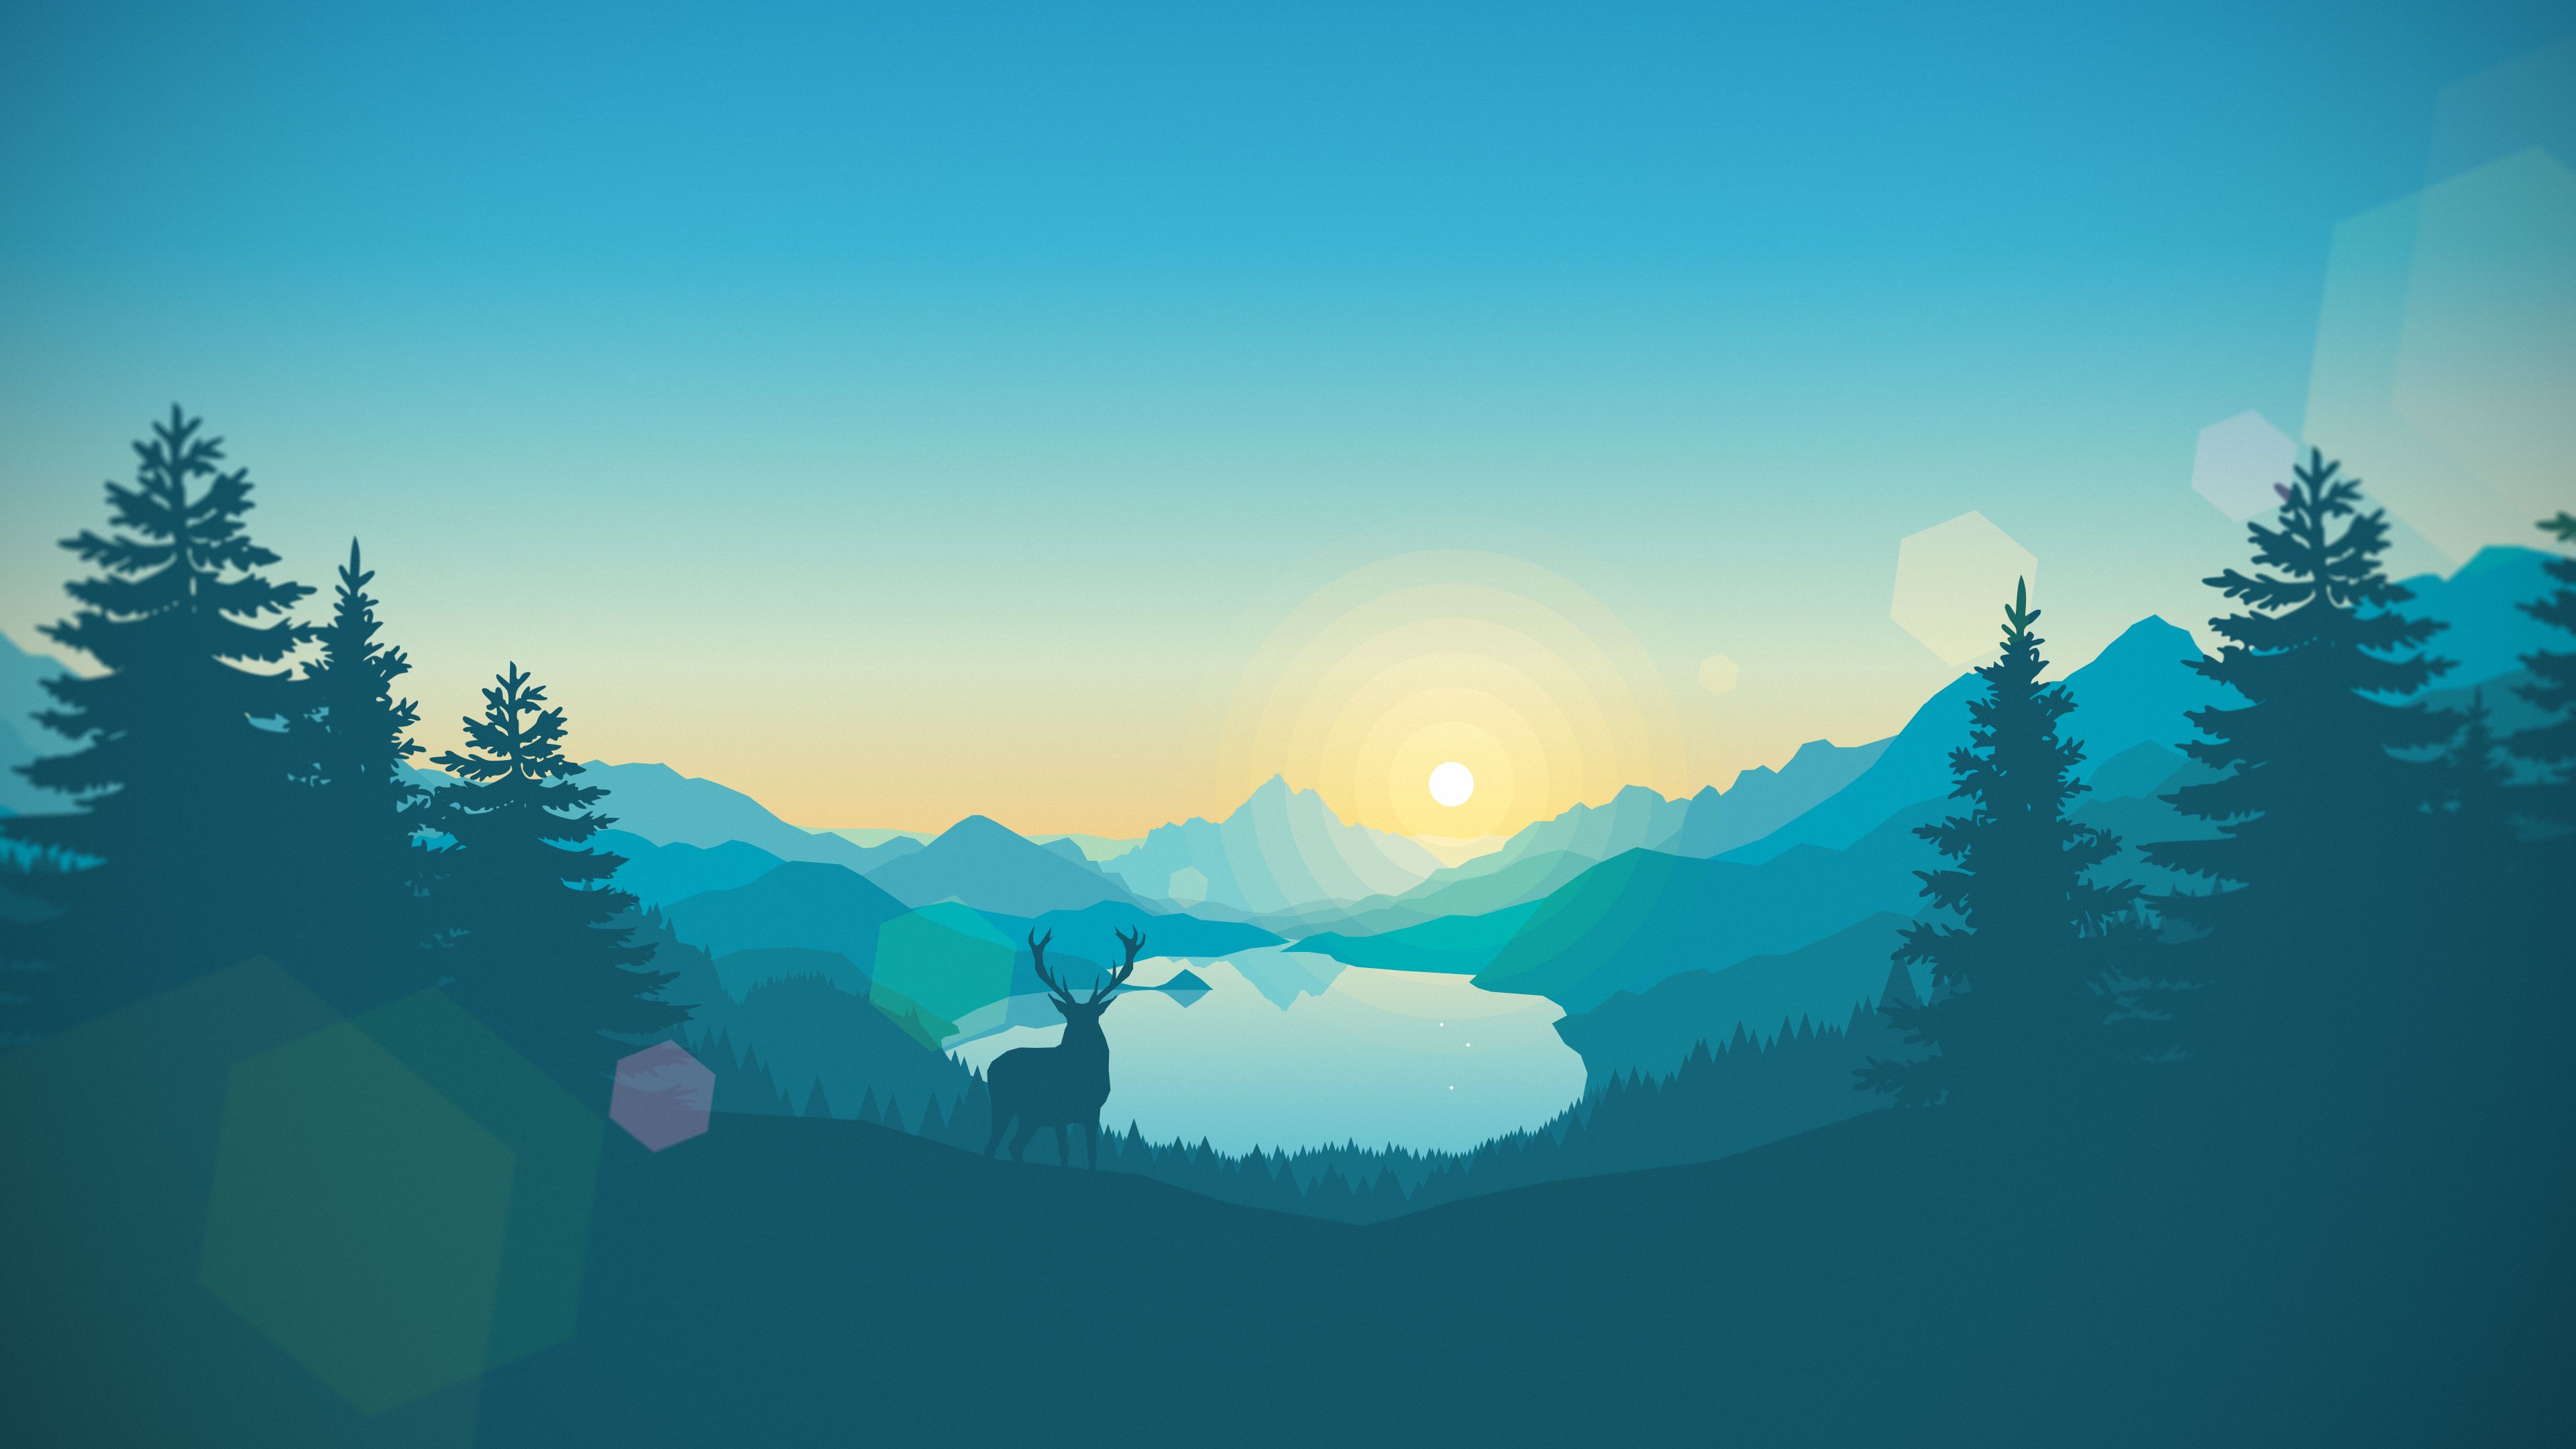 Lakeside sunrise 3840x2160. Sunset wallpaper, Deer wallpaper, 4k desktop wallpaper